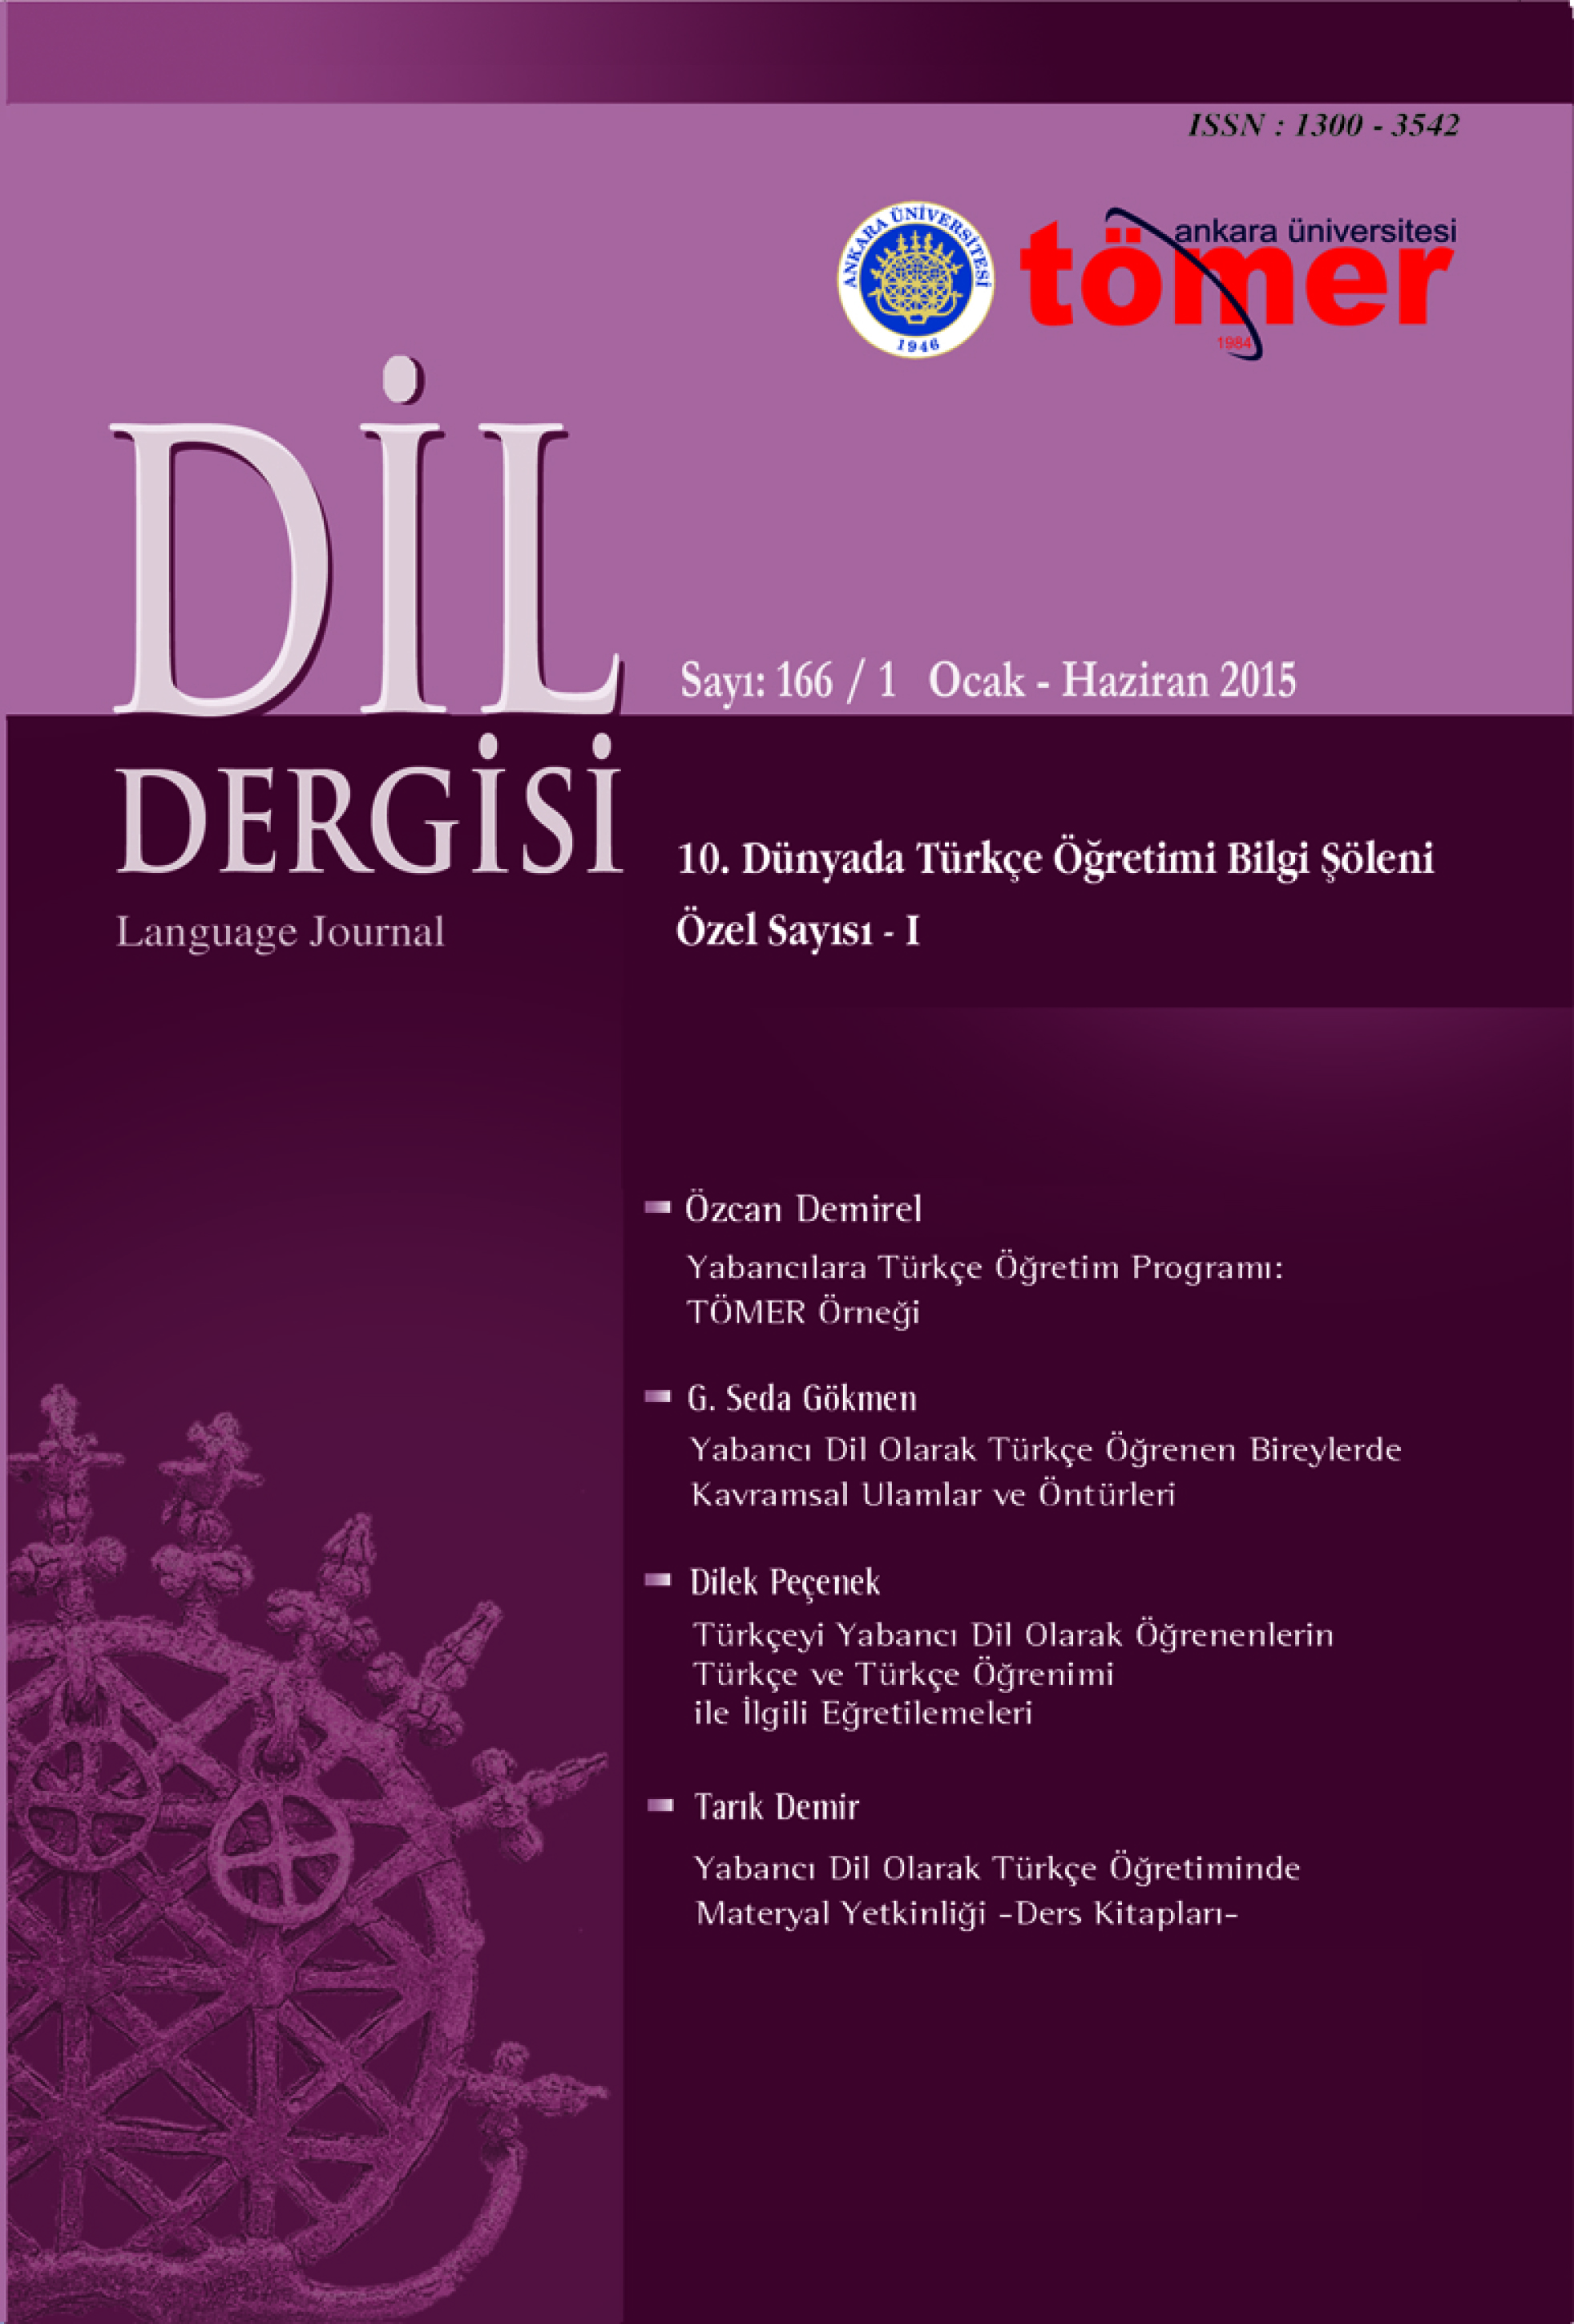 Yabancı Dil Olarak Türkçe Öğretim Programı: TÖMER Örneği